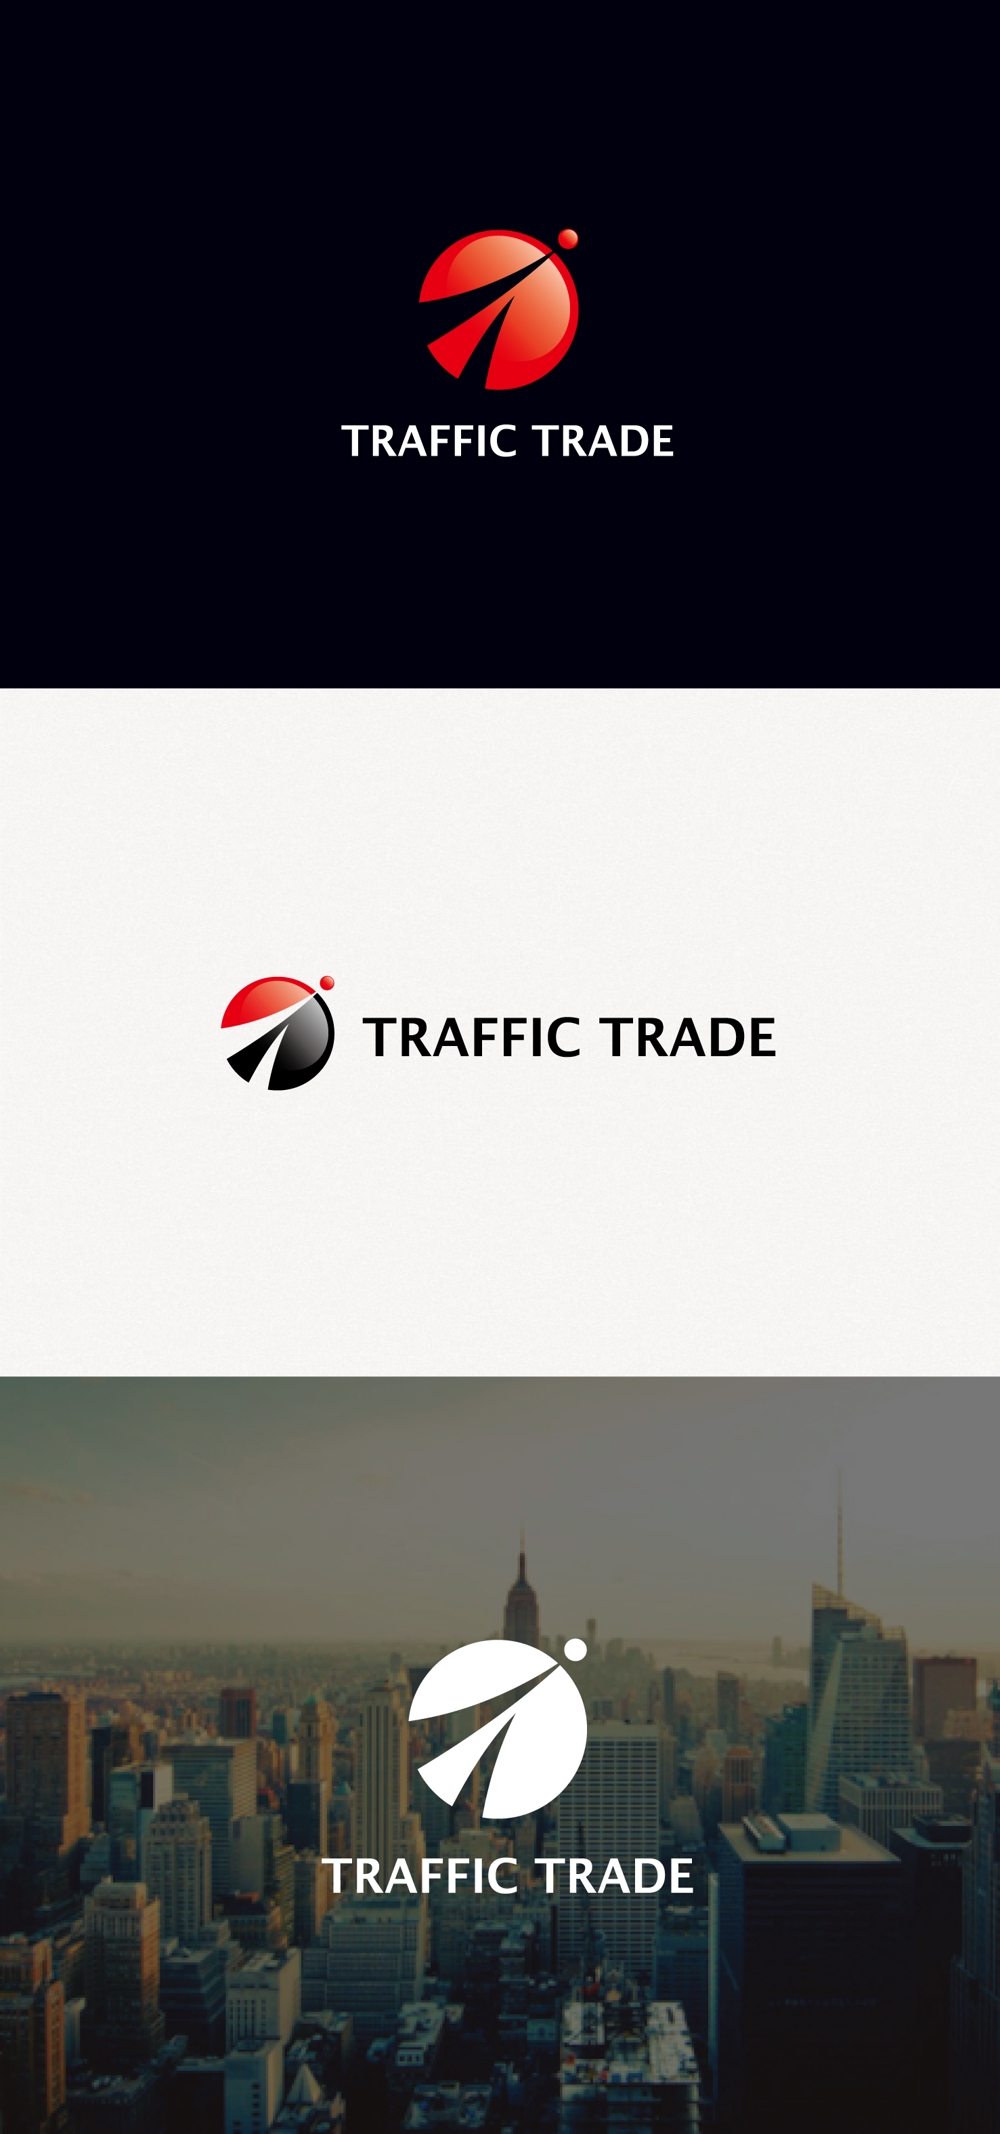 株式投資顧問会社「トラフィックトレード」の会社ロゴ